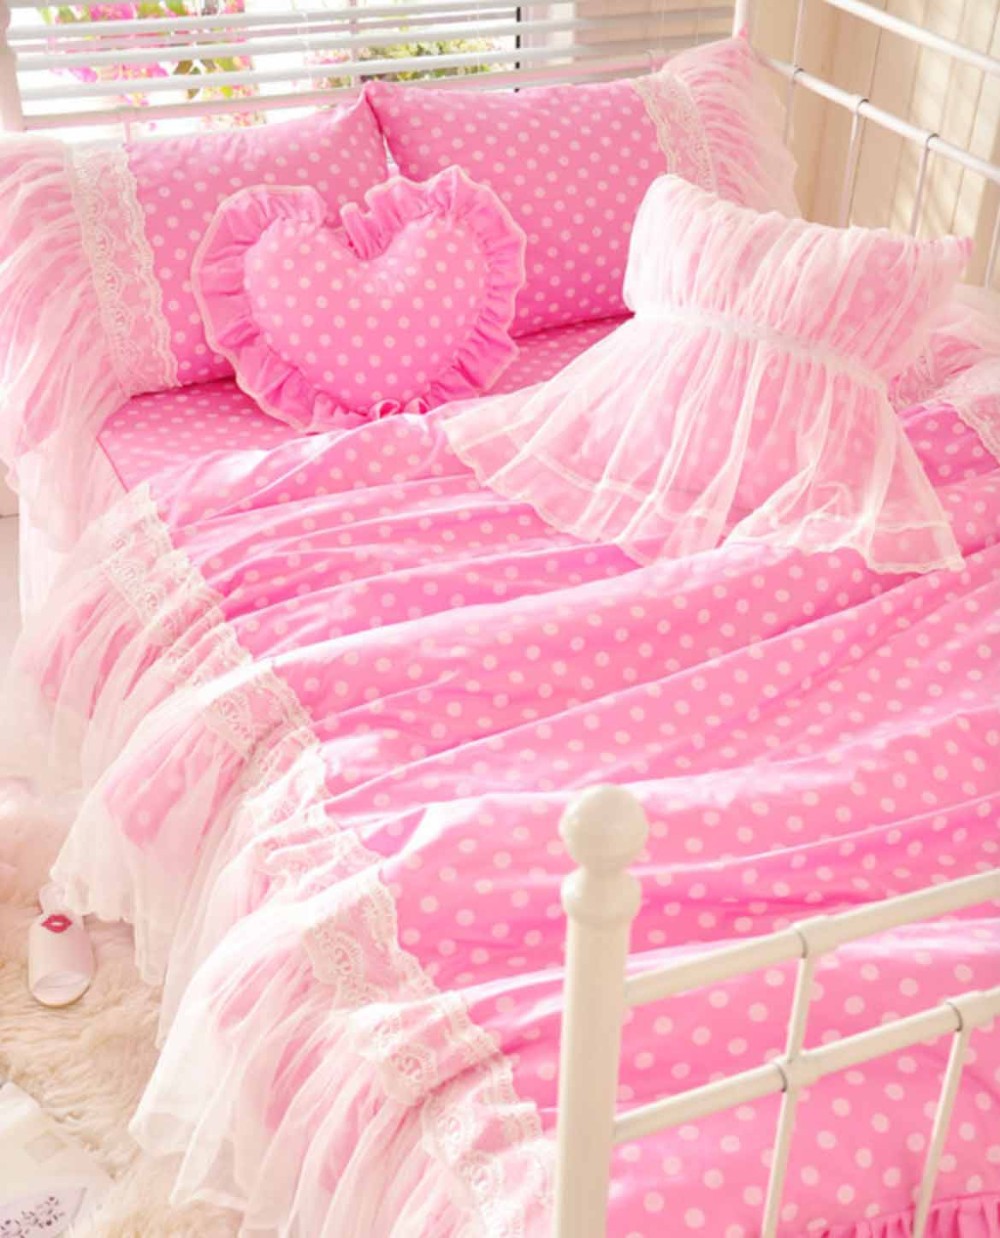 Cute Pink Polka Dot Bedding Set Teen Girl Cotton Twin Full Queen